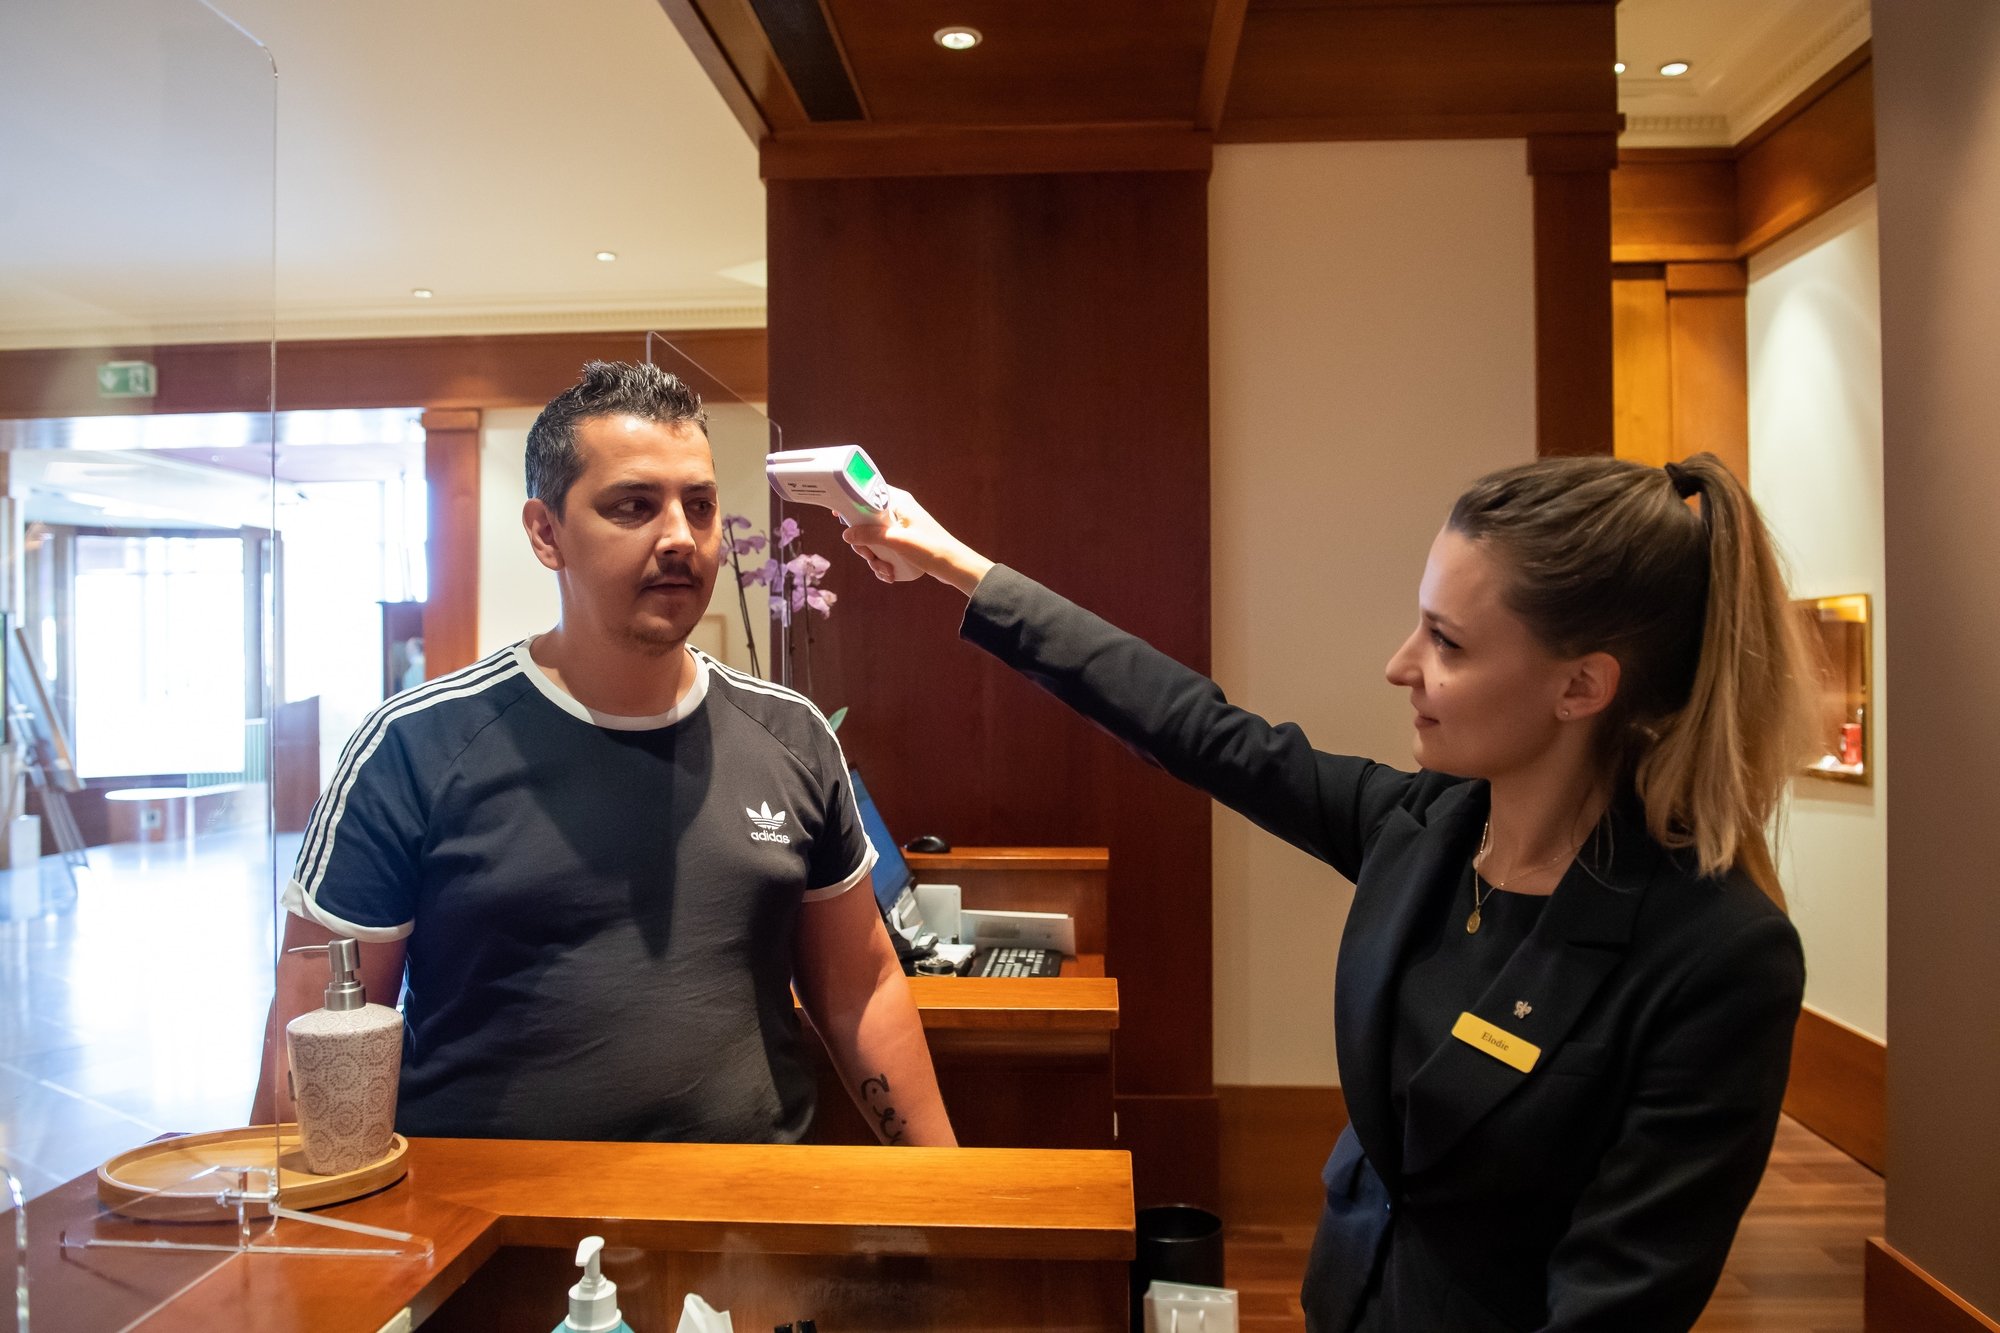 Avant de prendre son service, chaque employé de l'hôtel Beau-Rivage doit passer par la réception et se faire prendre la température.